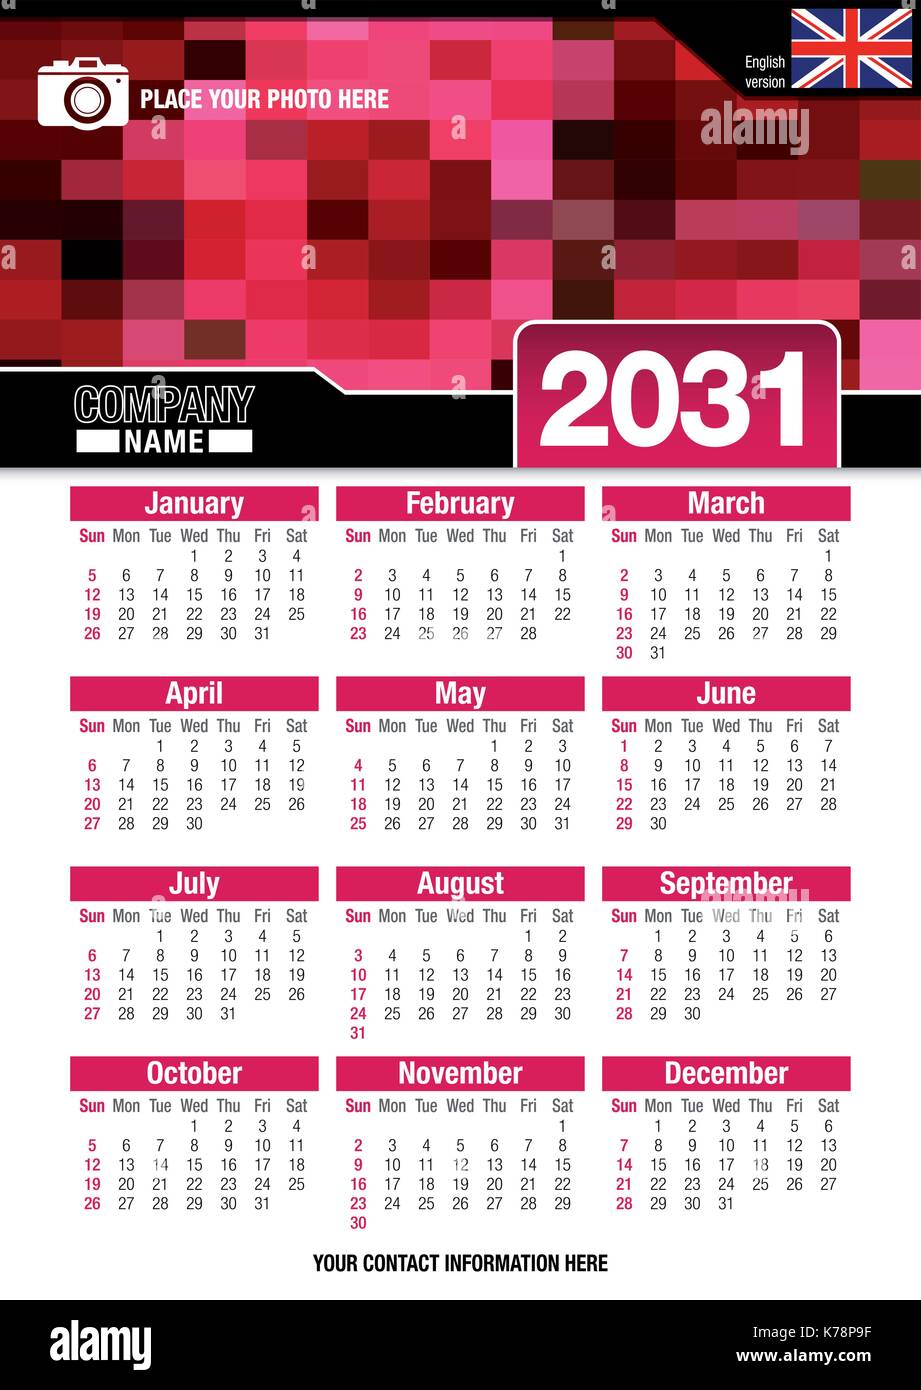 Utile calendario da parete 2031 con design di colori rosso mosaico. Formato A4 verticale. Dimensioni: 210mm x 297mm. Versione Inglese - immagine vettoriale Illustrazione Vettoriale